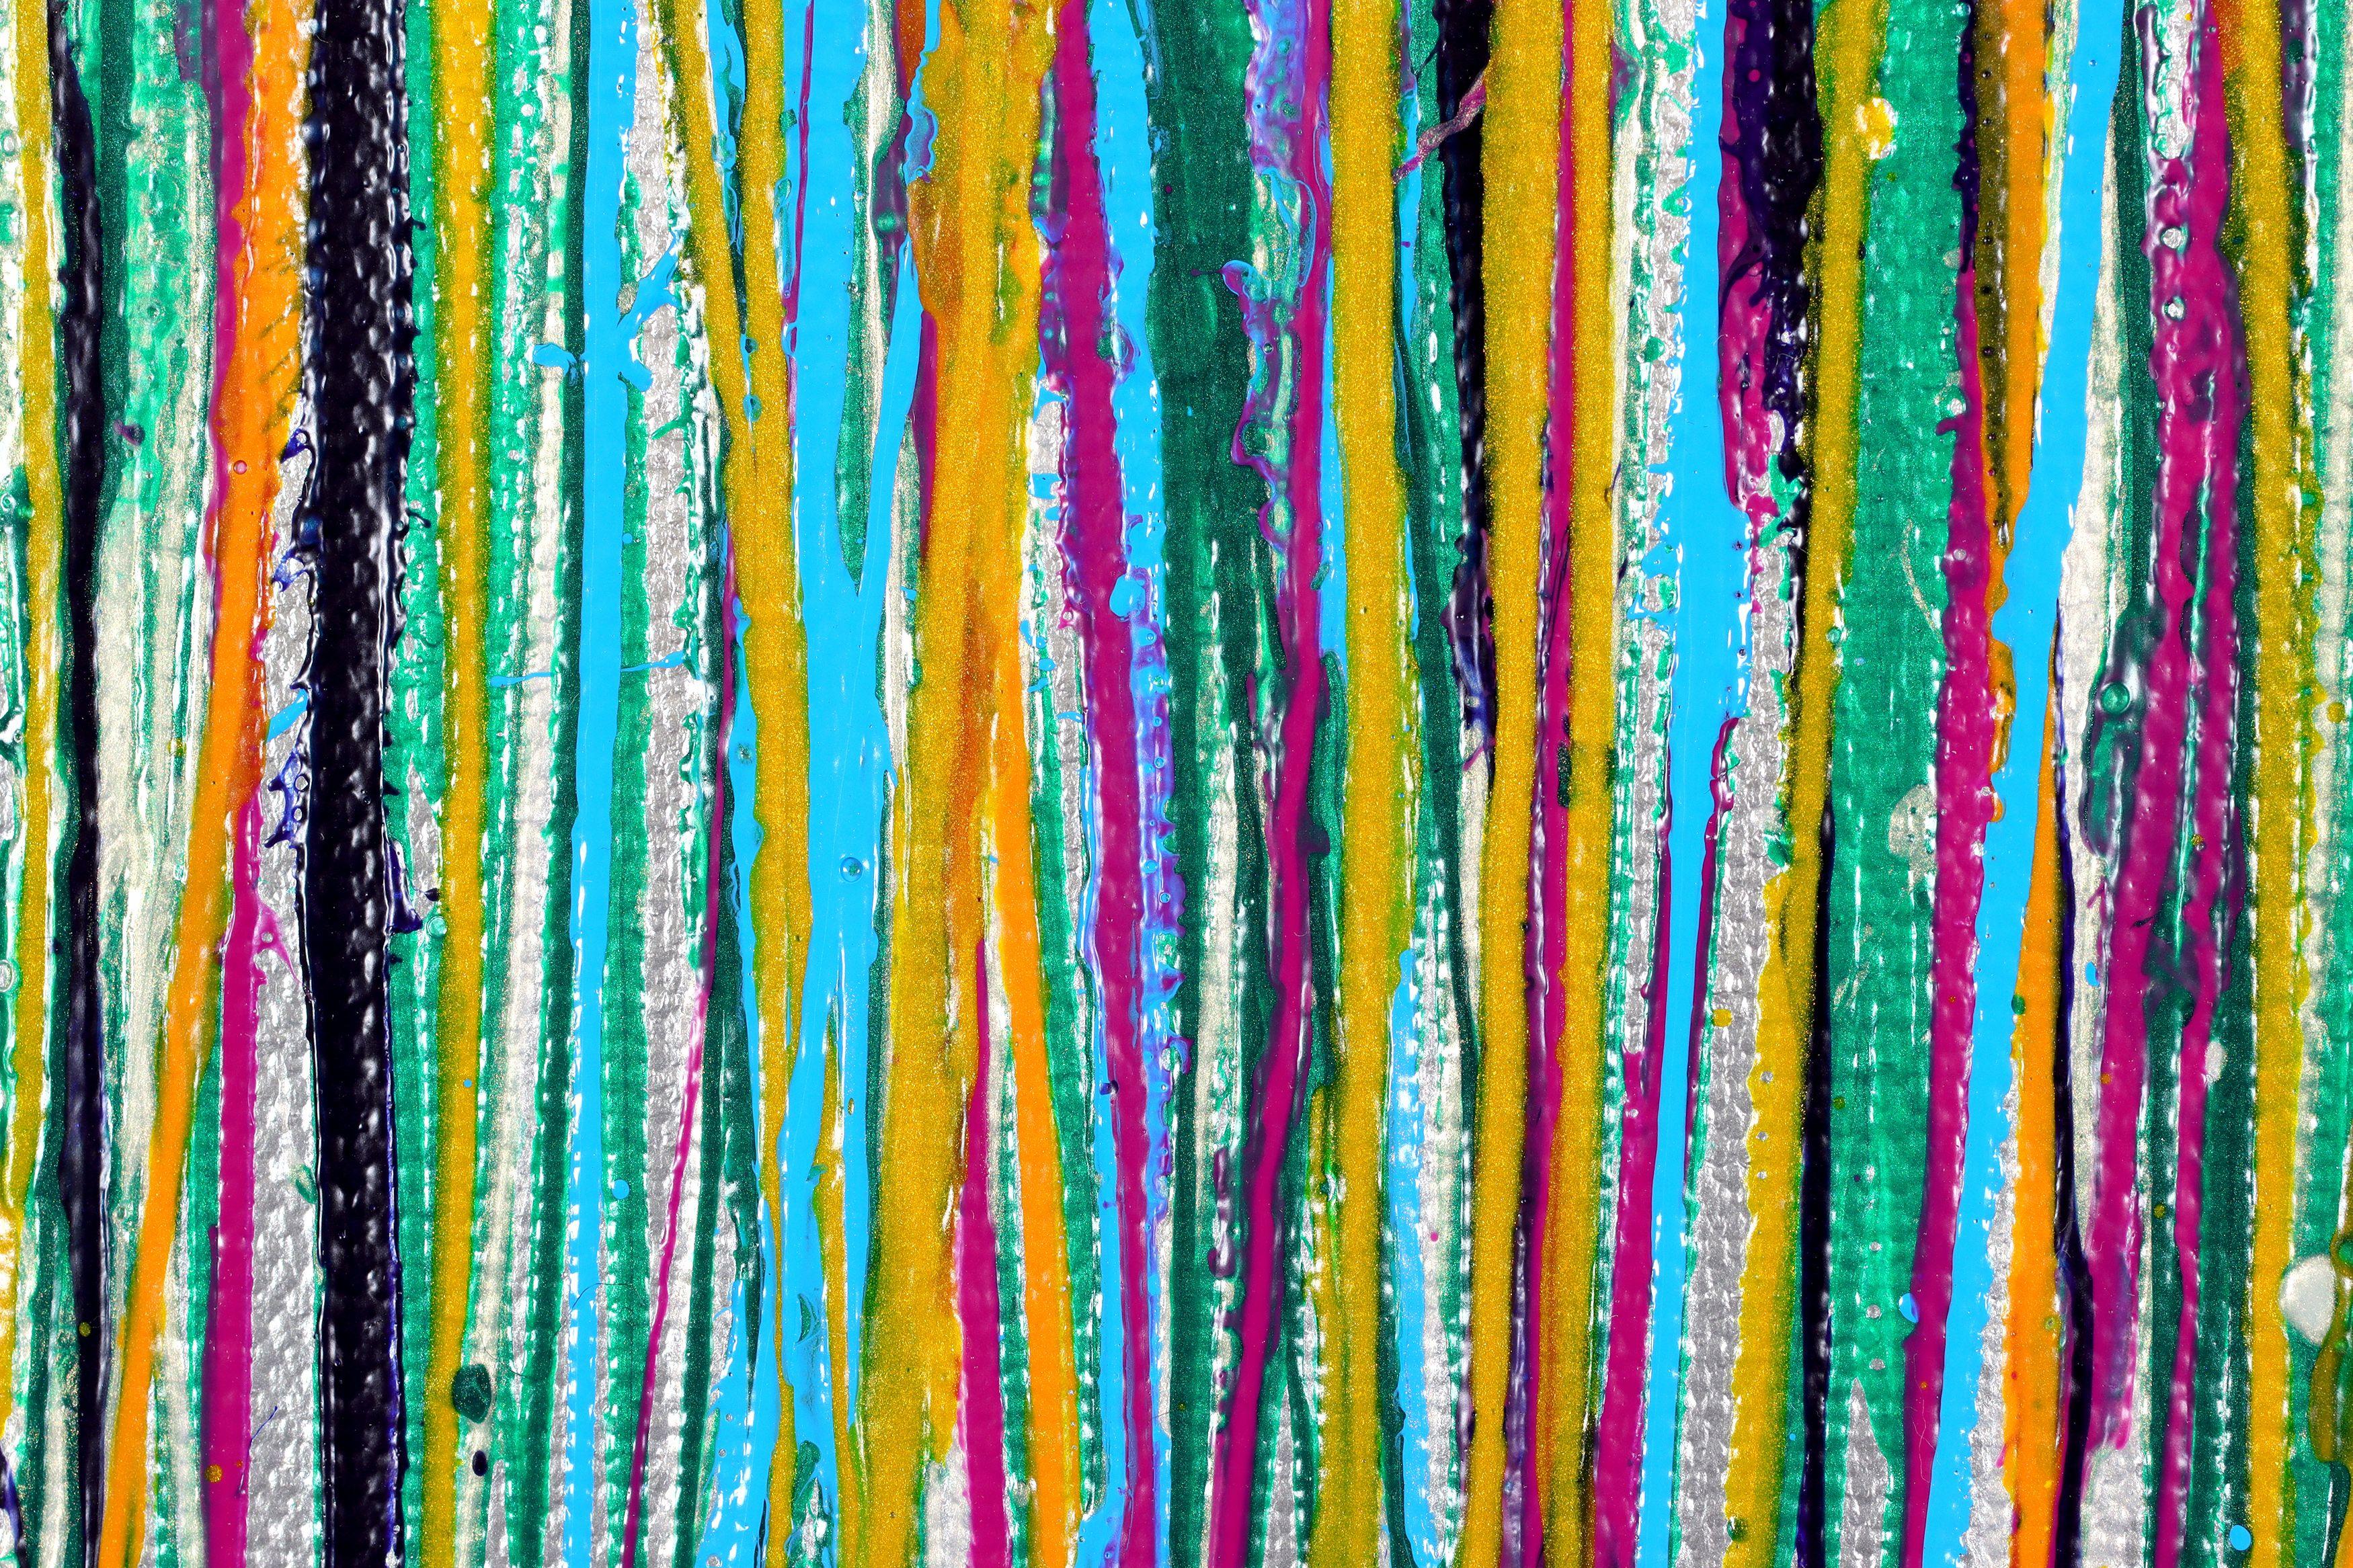 Dieses strahlende, moderne, abstrakte Bild wurde mit irisierenden Acrylfarben in zufälligen, aber beruhigenden Mustern gemischt. Eine Farbpalette von Silber, Blau, Gelb, Grün über Silber, die meisten Farben gemischt mit Glimmer für Reflektivität und